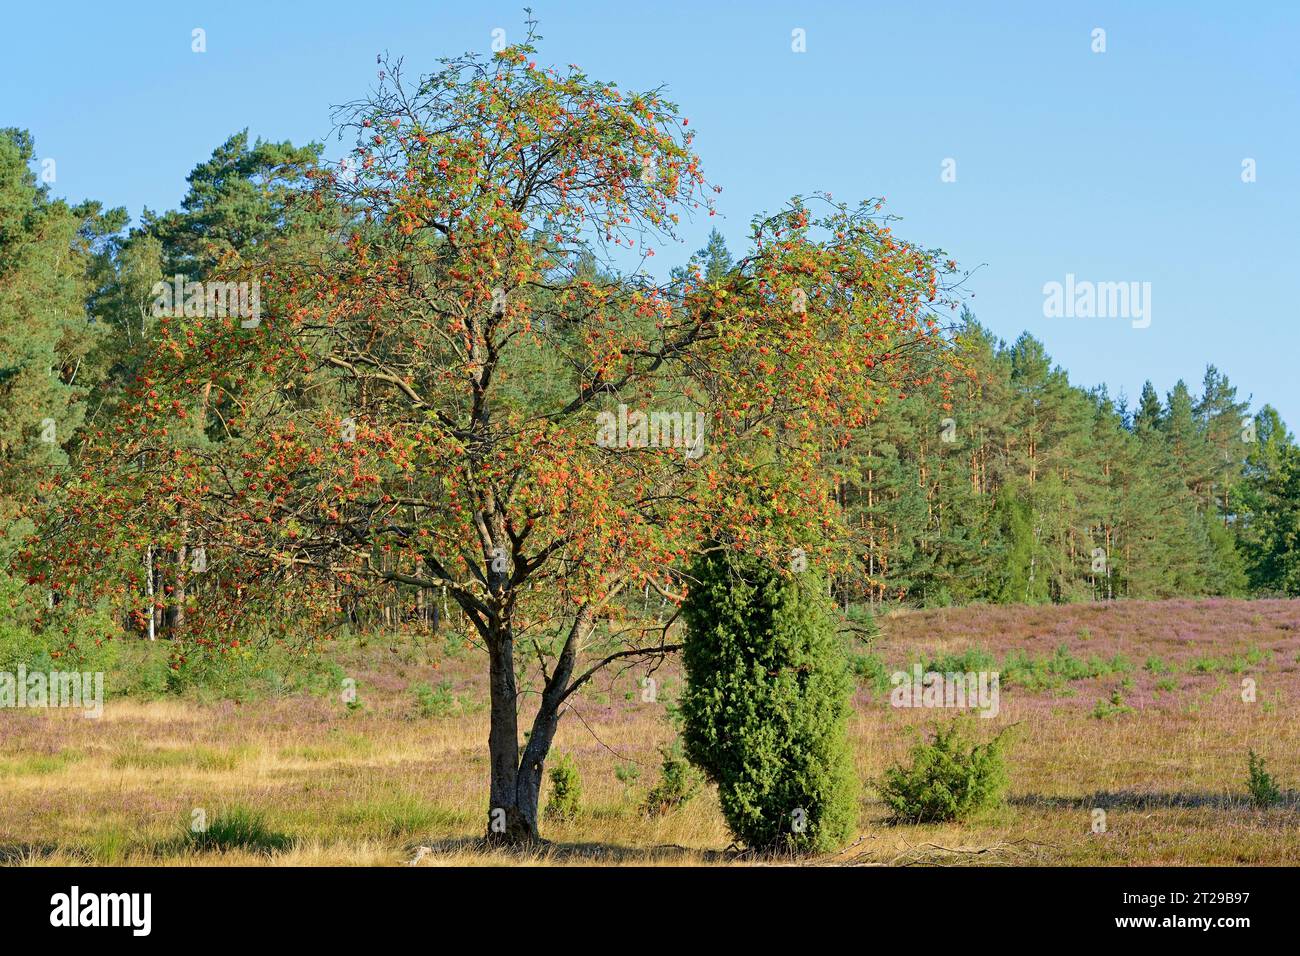 Heath landscape, typical vegetation, european rowan (Sorbus aucuparia), juniper (Juniperus communis) and flowering common heather (Calluna Vulgaris) Stock Photo